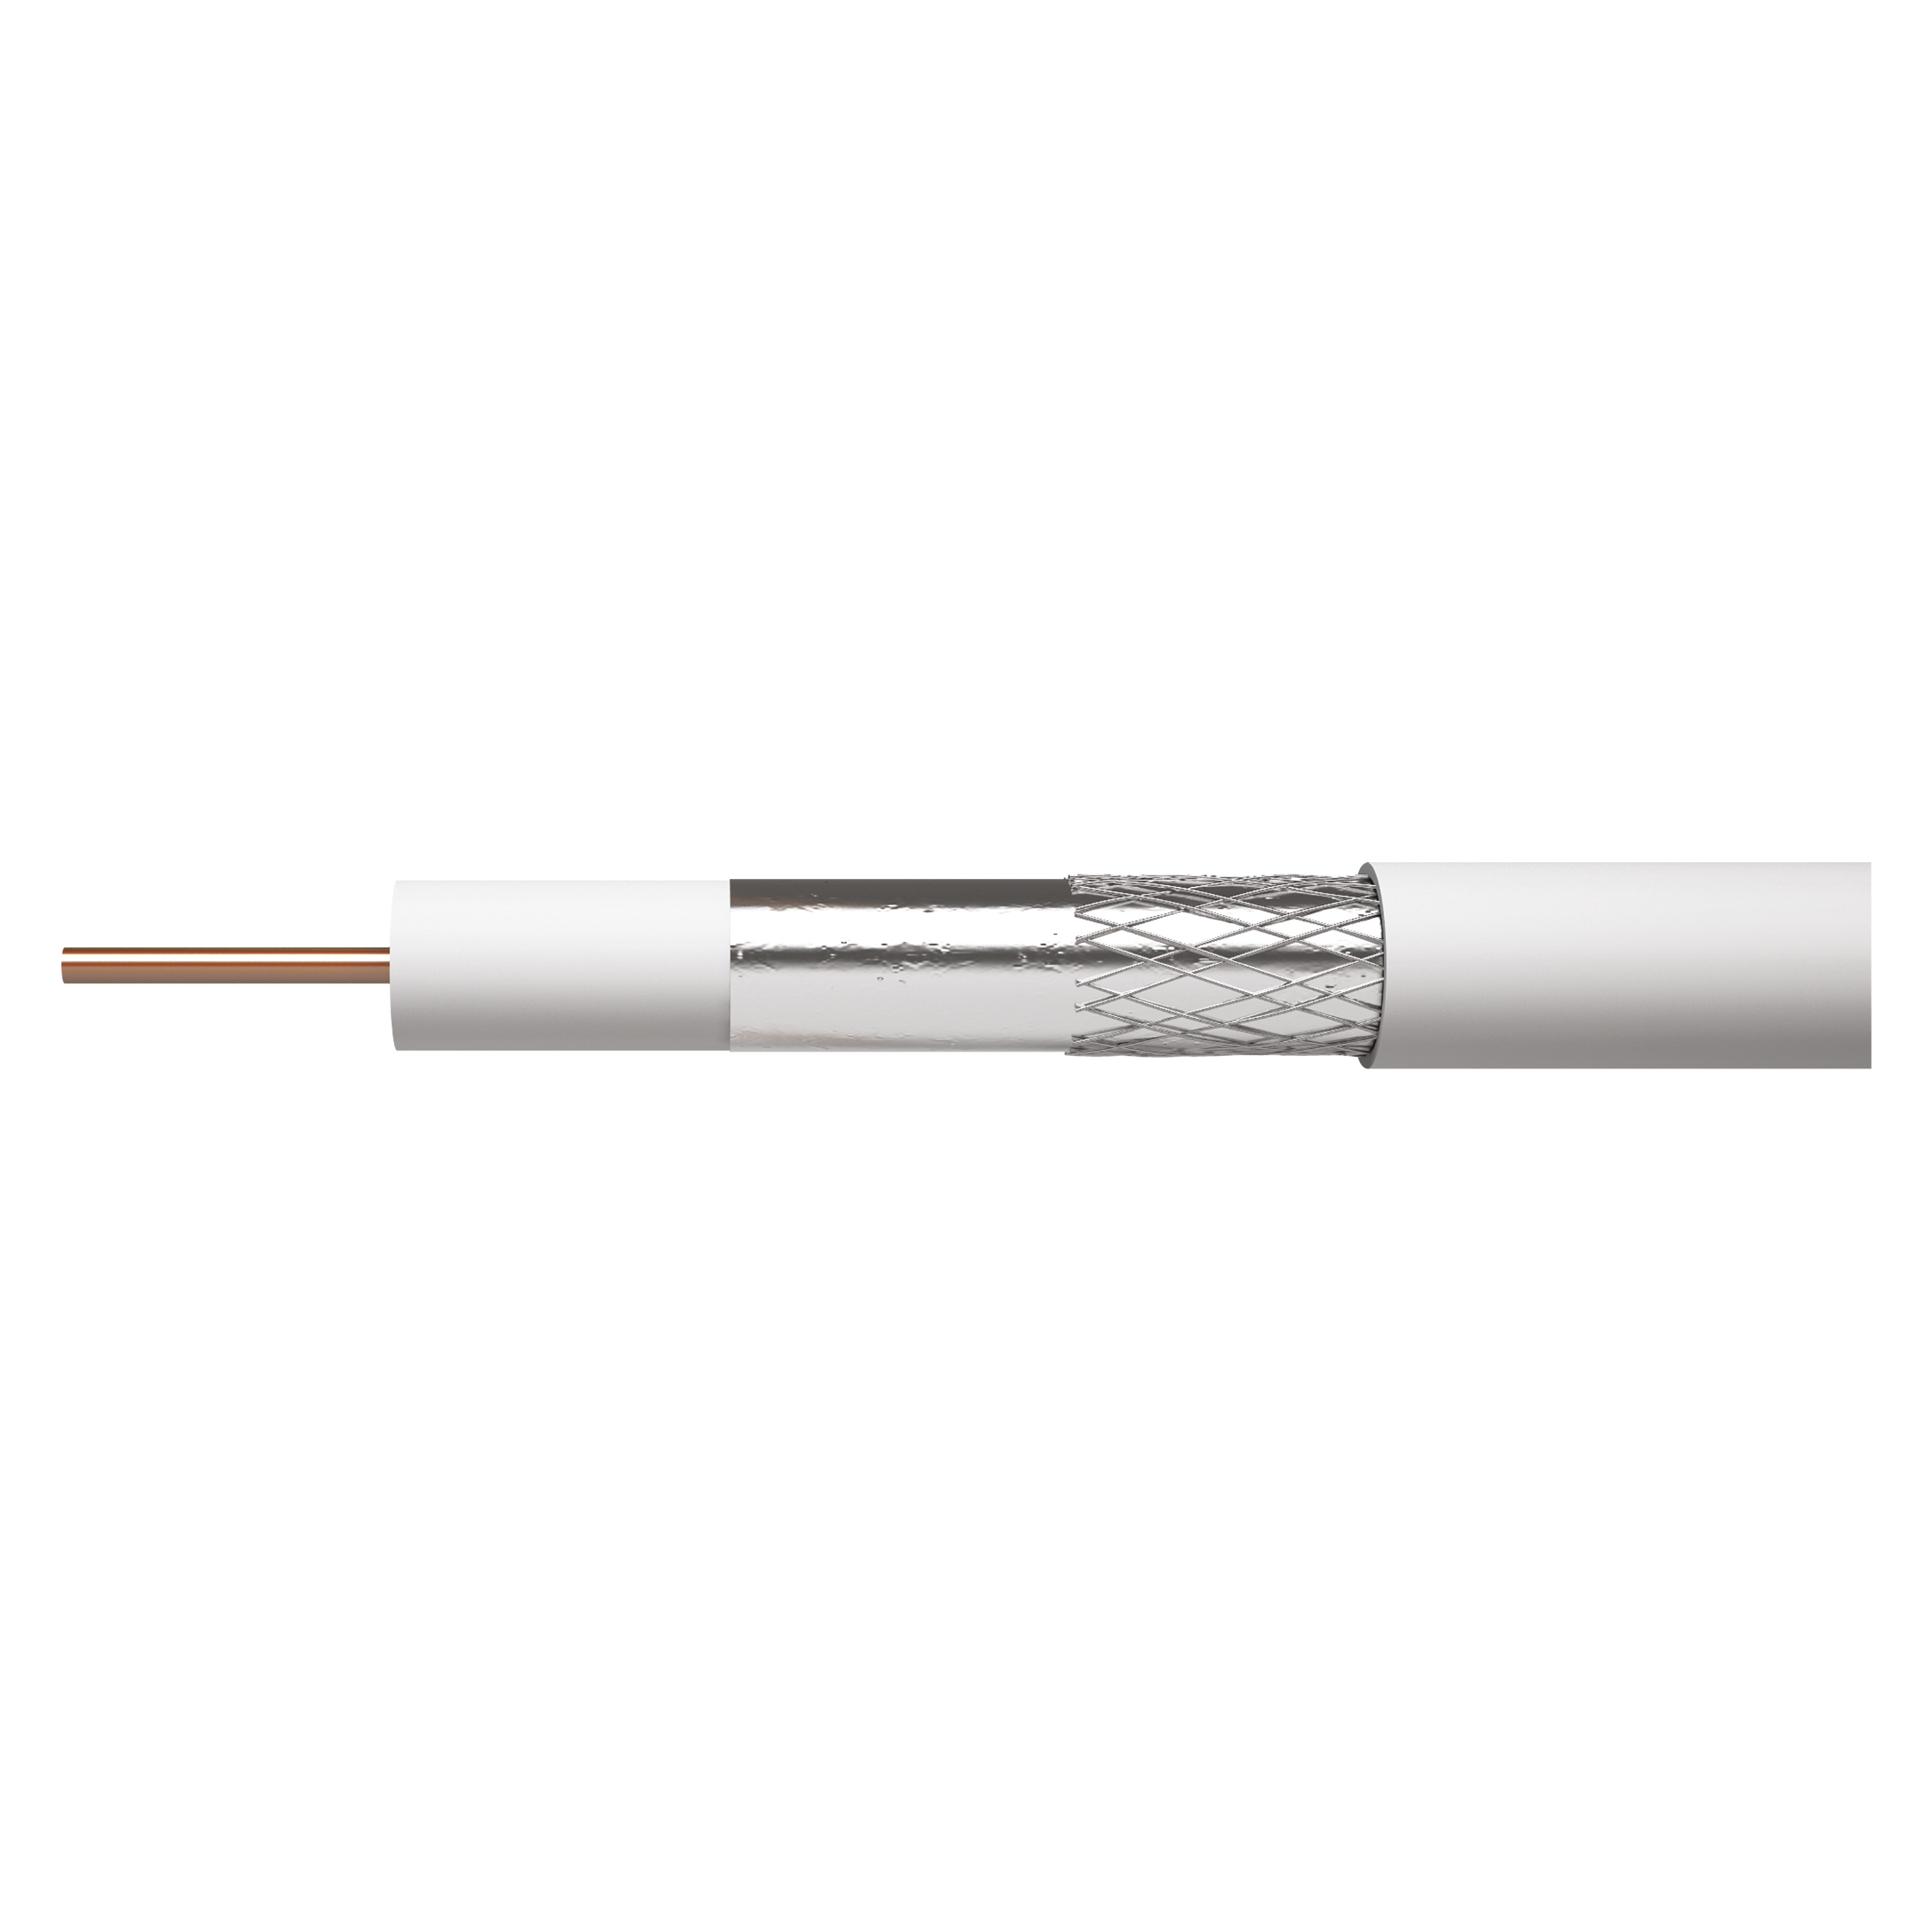 Cablu coaxial Emos CB130/ RG6U,1 conductor, diametru 1.02 mm, alb, 20 m/colac 1.02